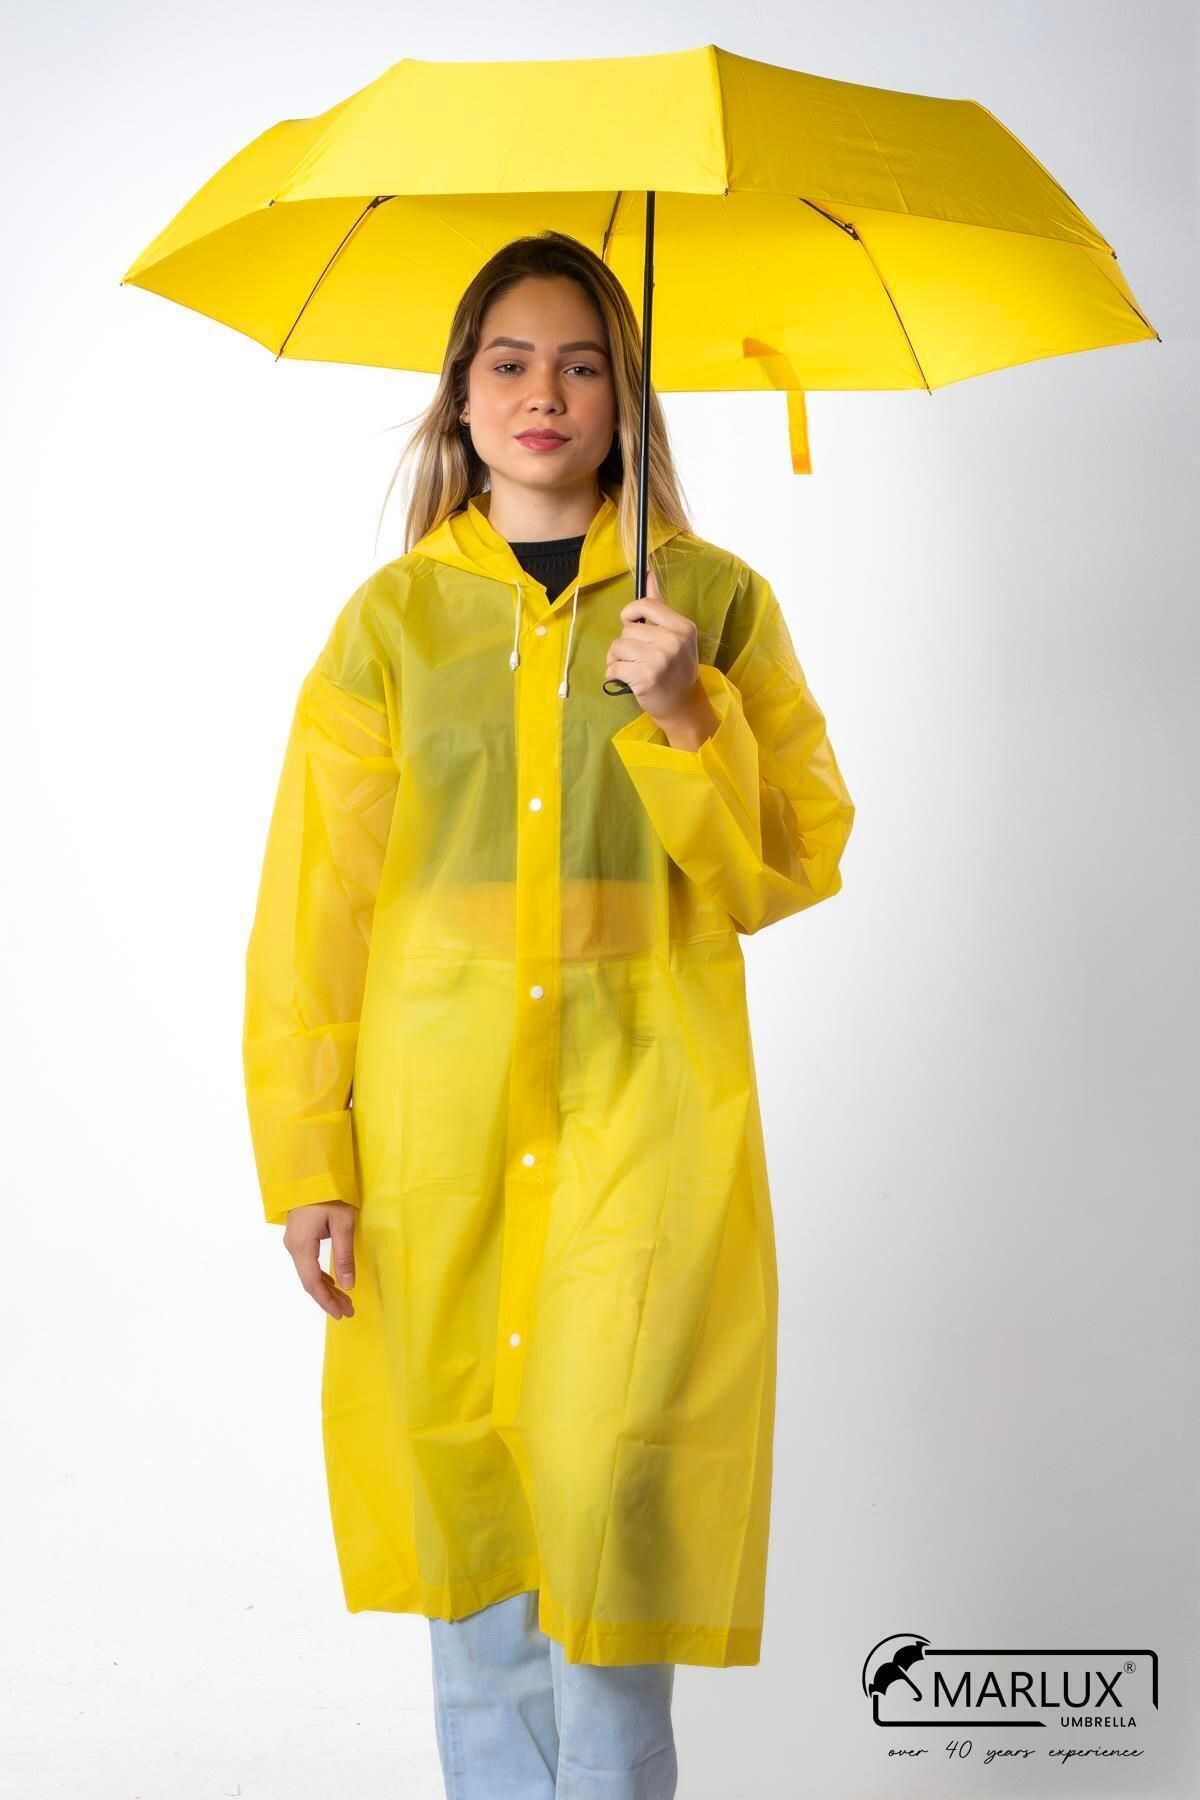 Marlux Neon Sarı Süper Mini Kadın Şemsiye M21mar298neor002